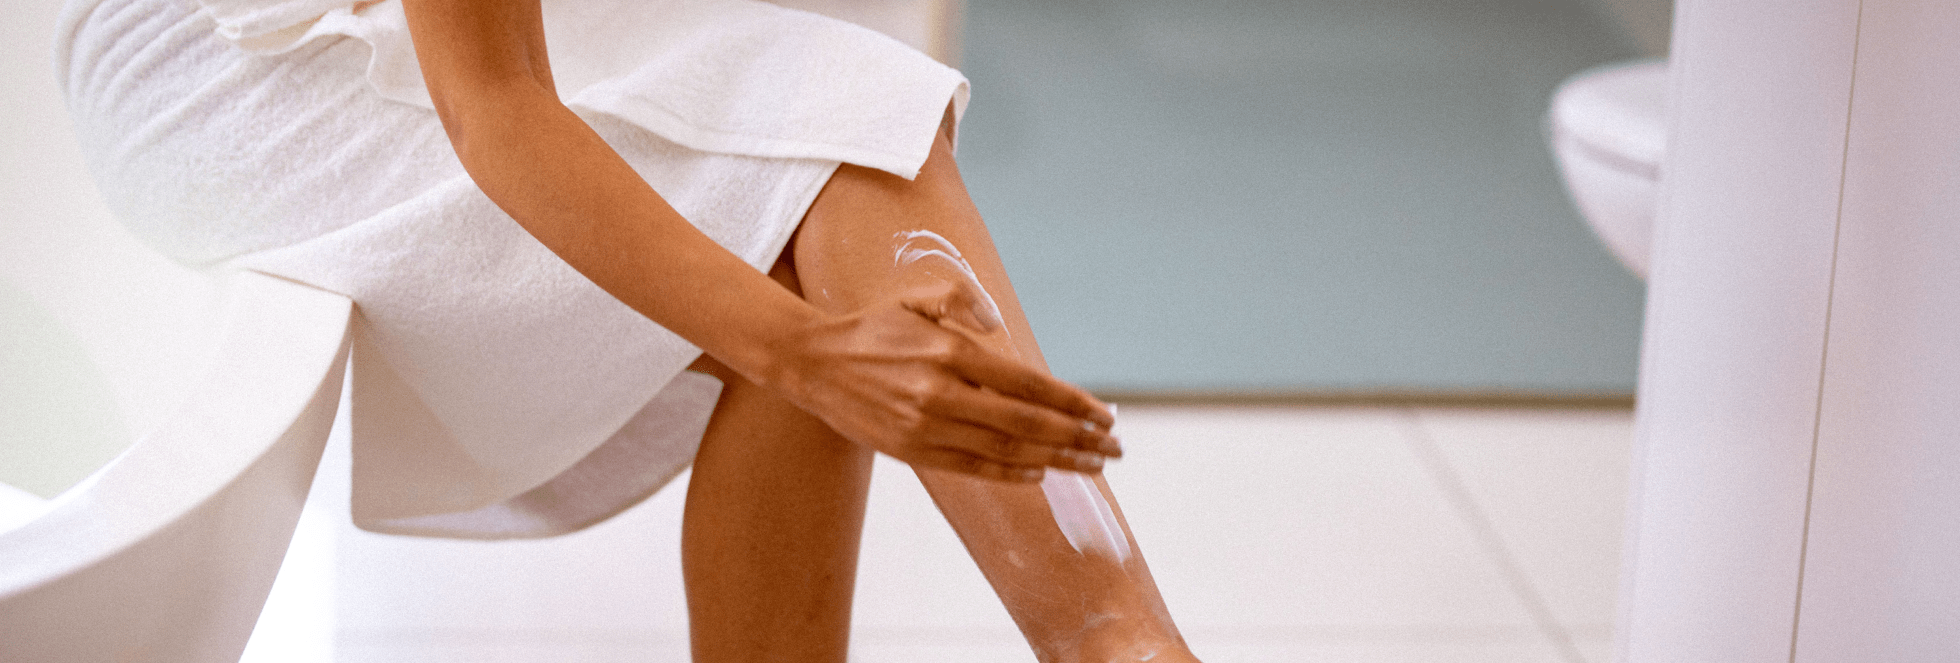 A women applying moisturiser to itchy legs after a shower